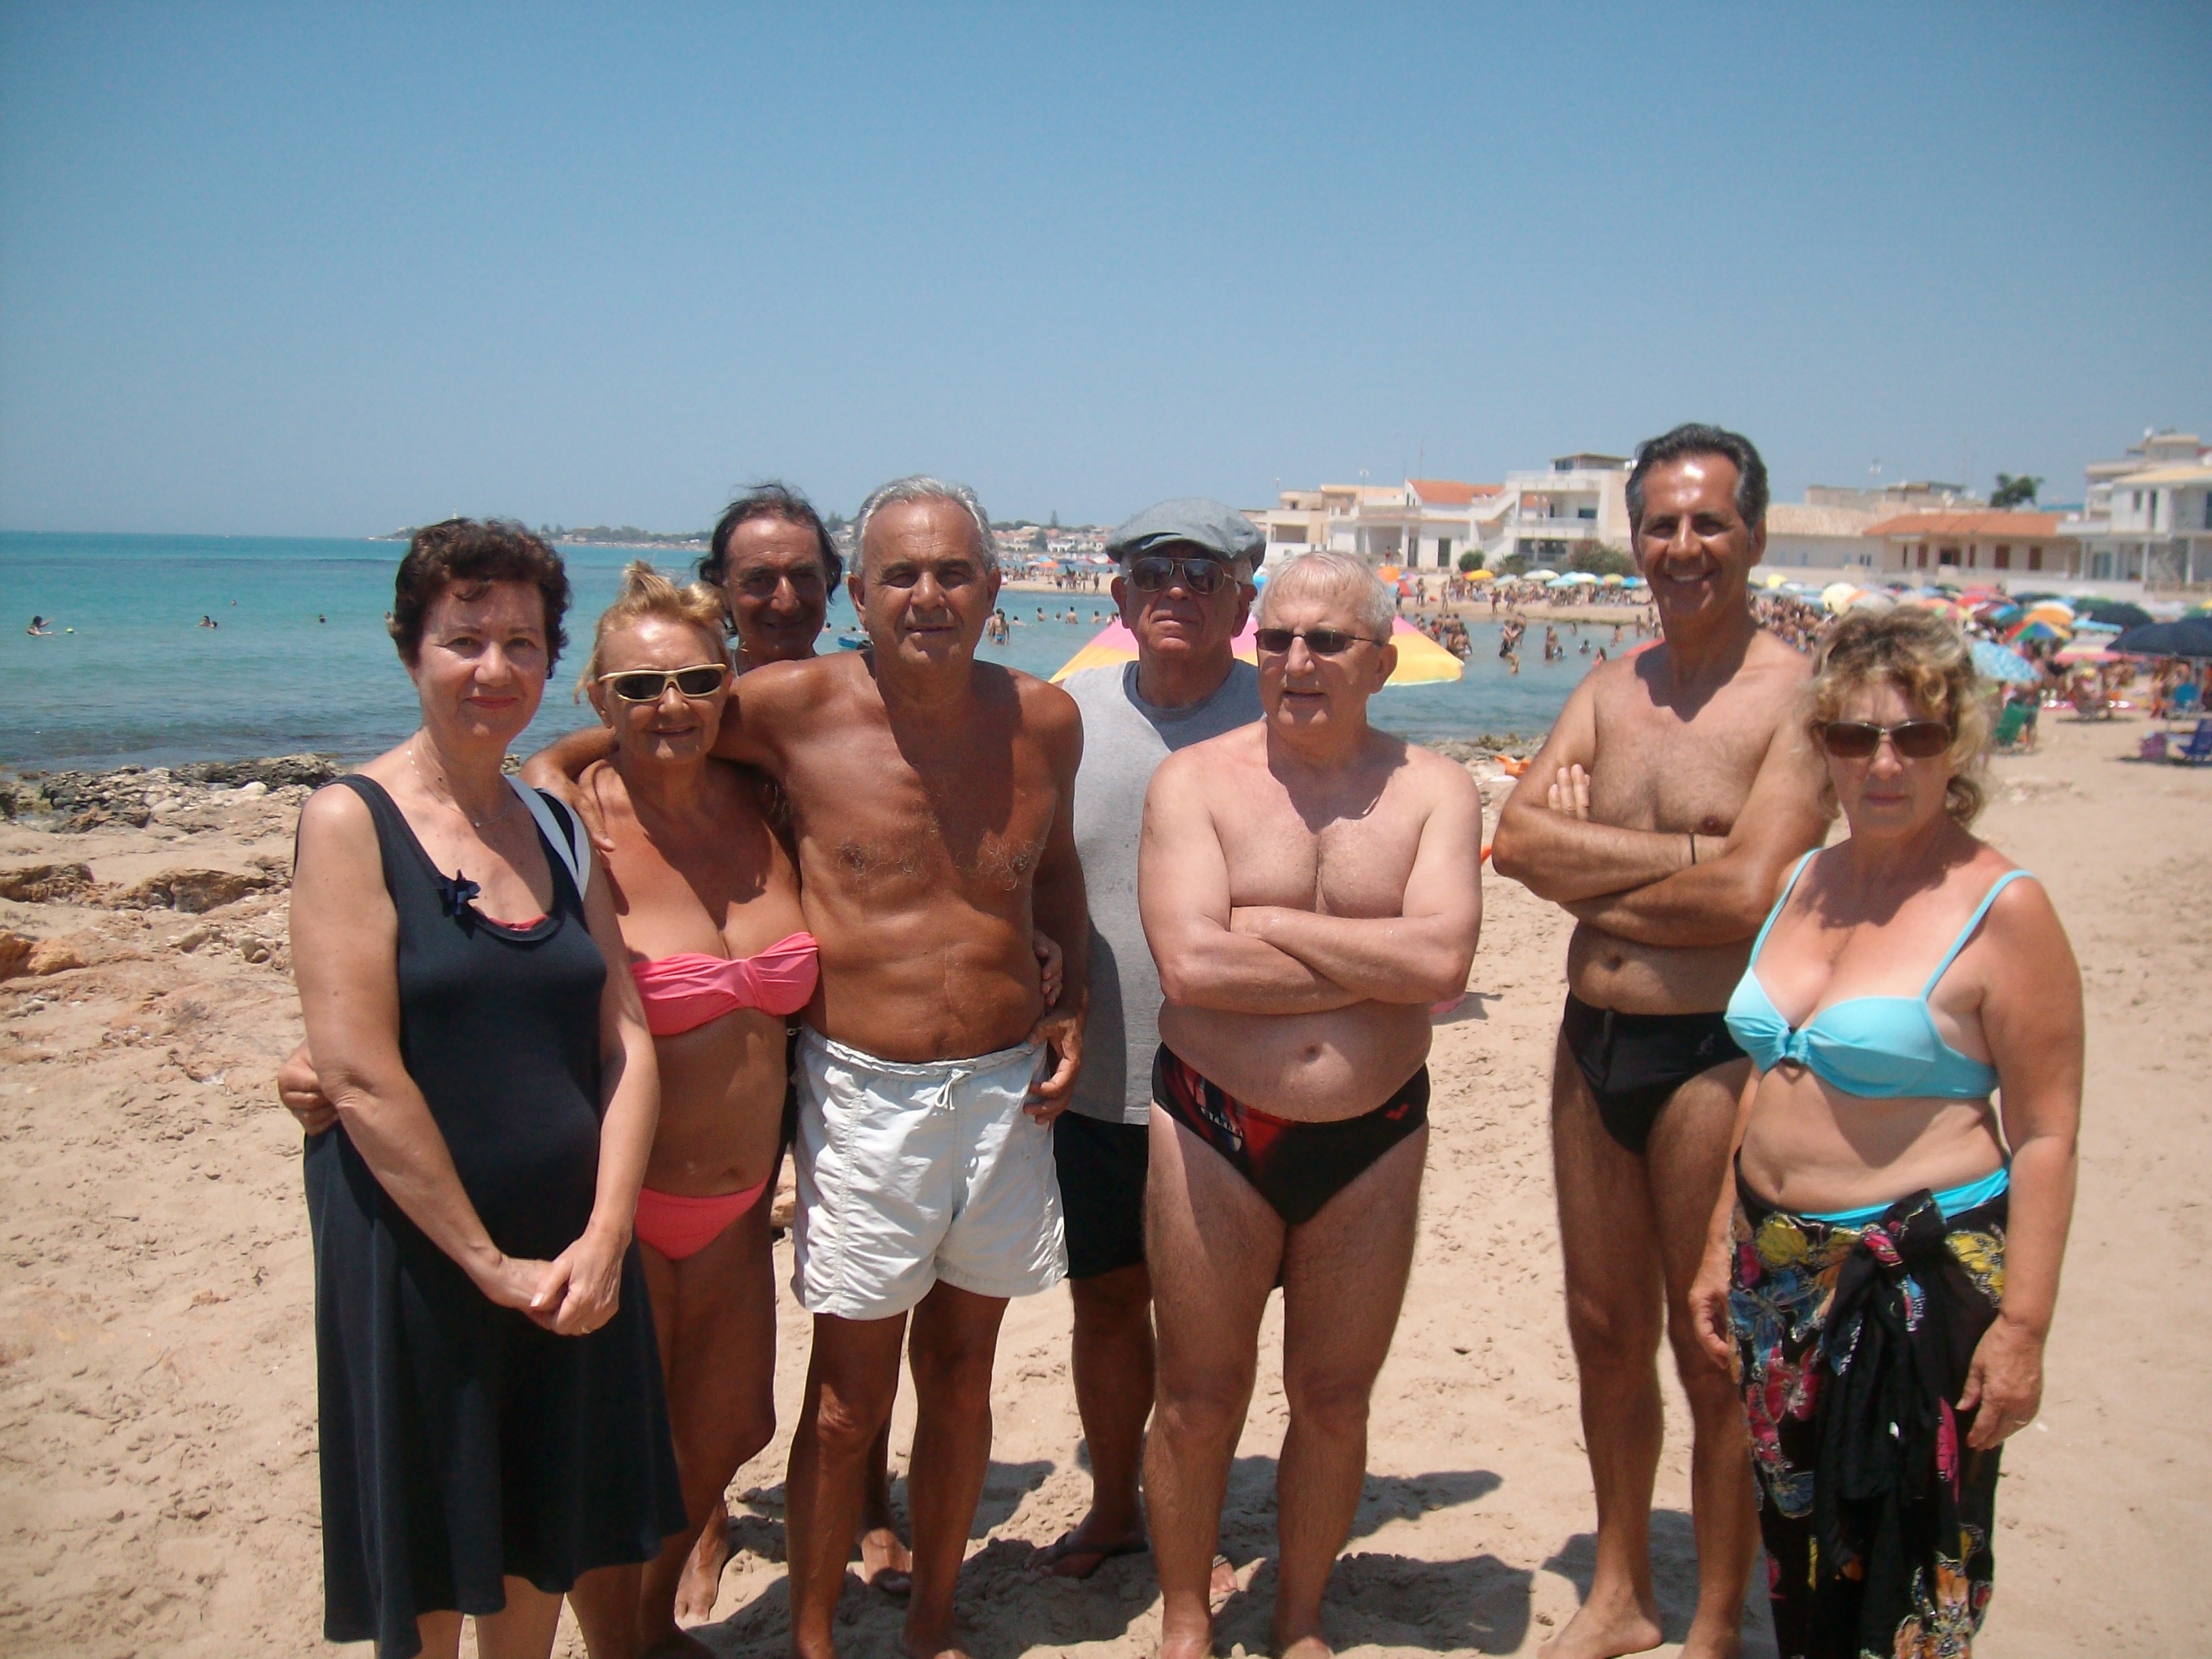  Cittadini ripuliscono a proprie spese la spiaggia di Casuzze: “Mancano i servizi essenziali”